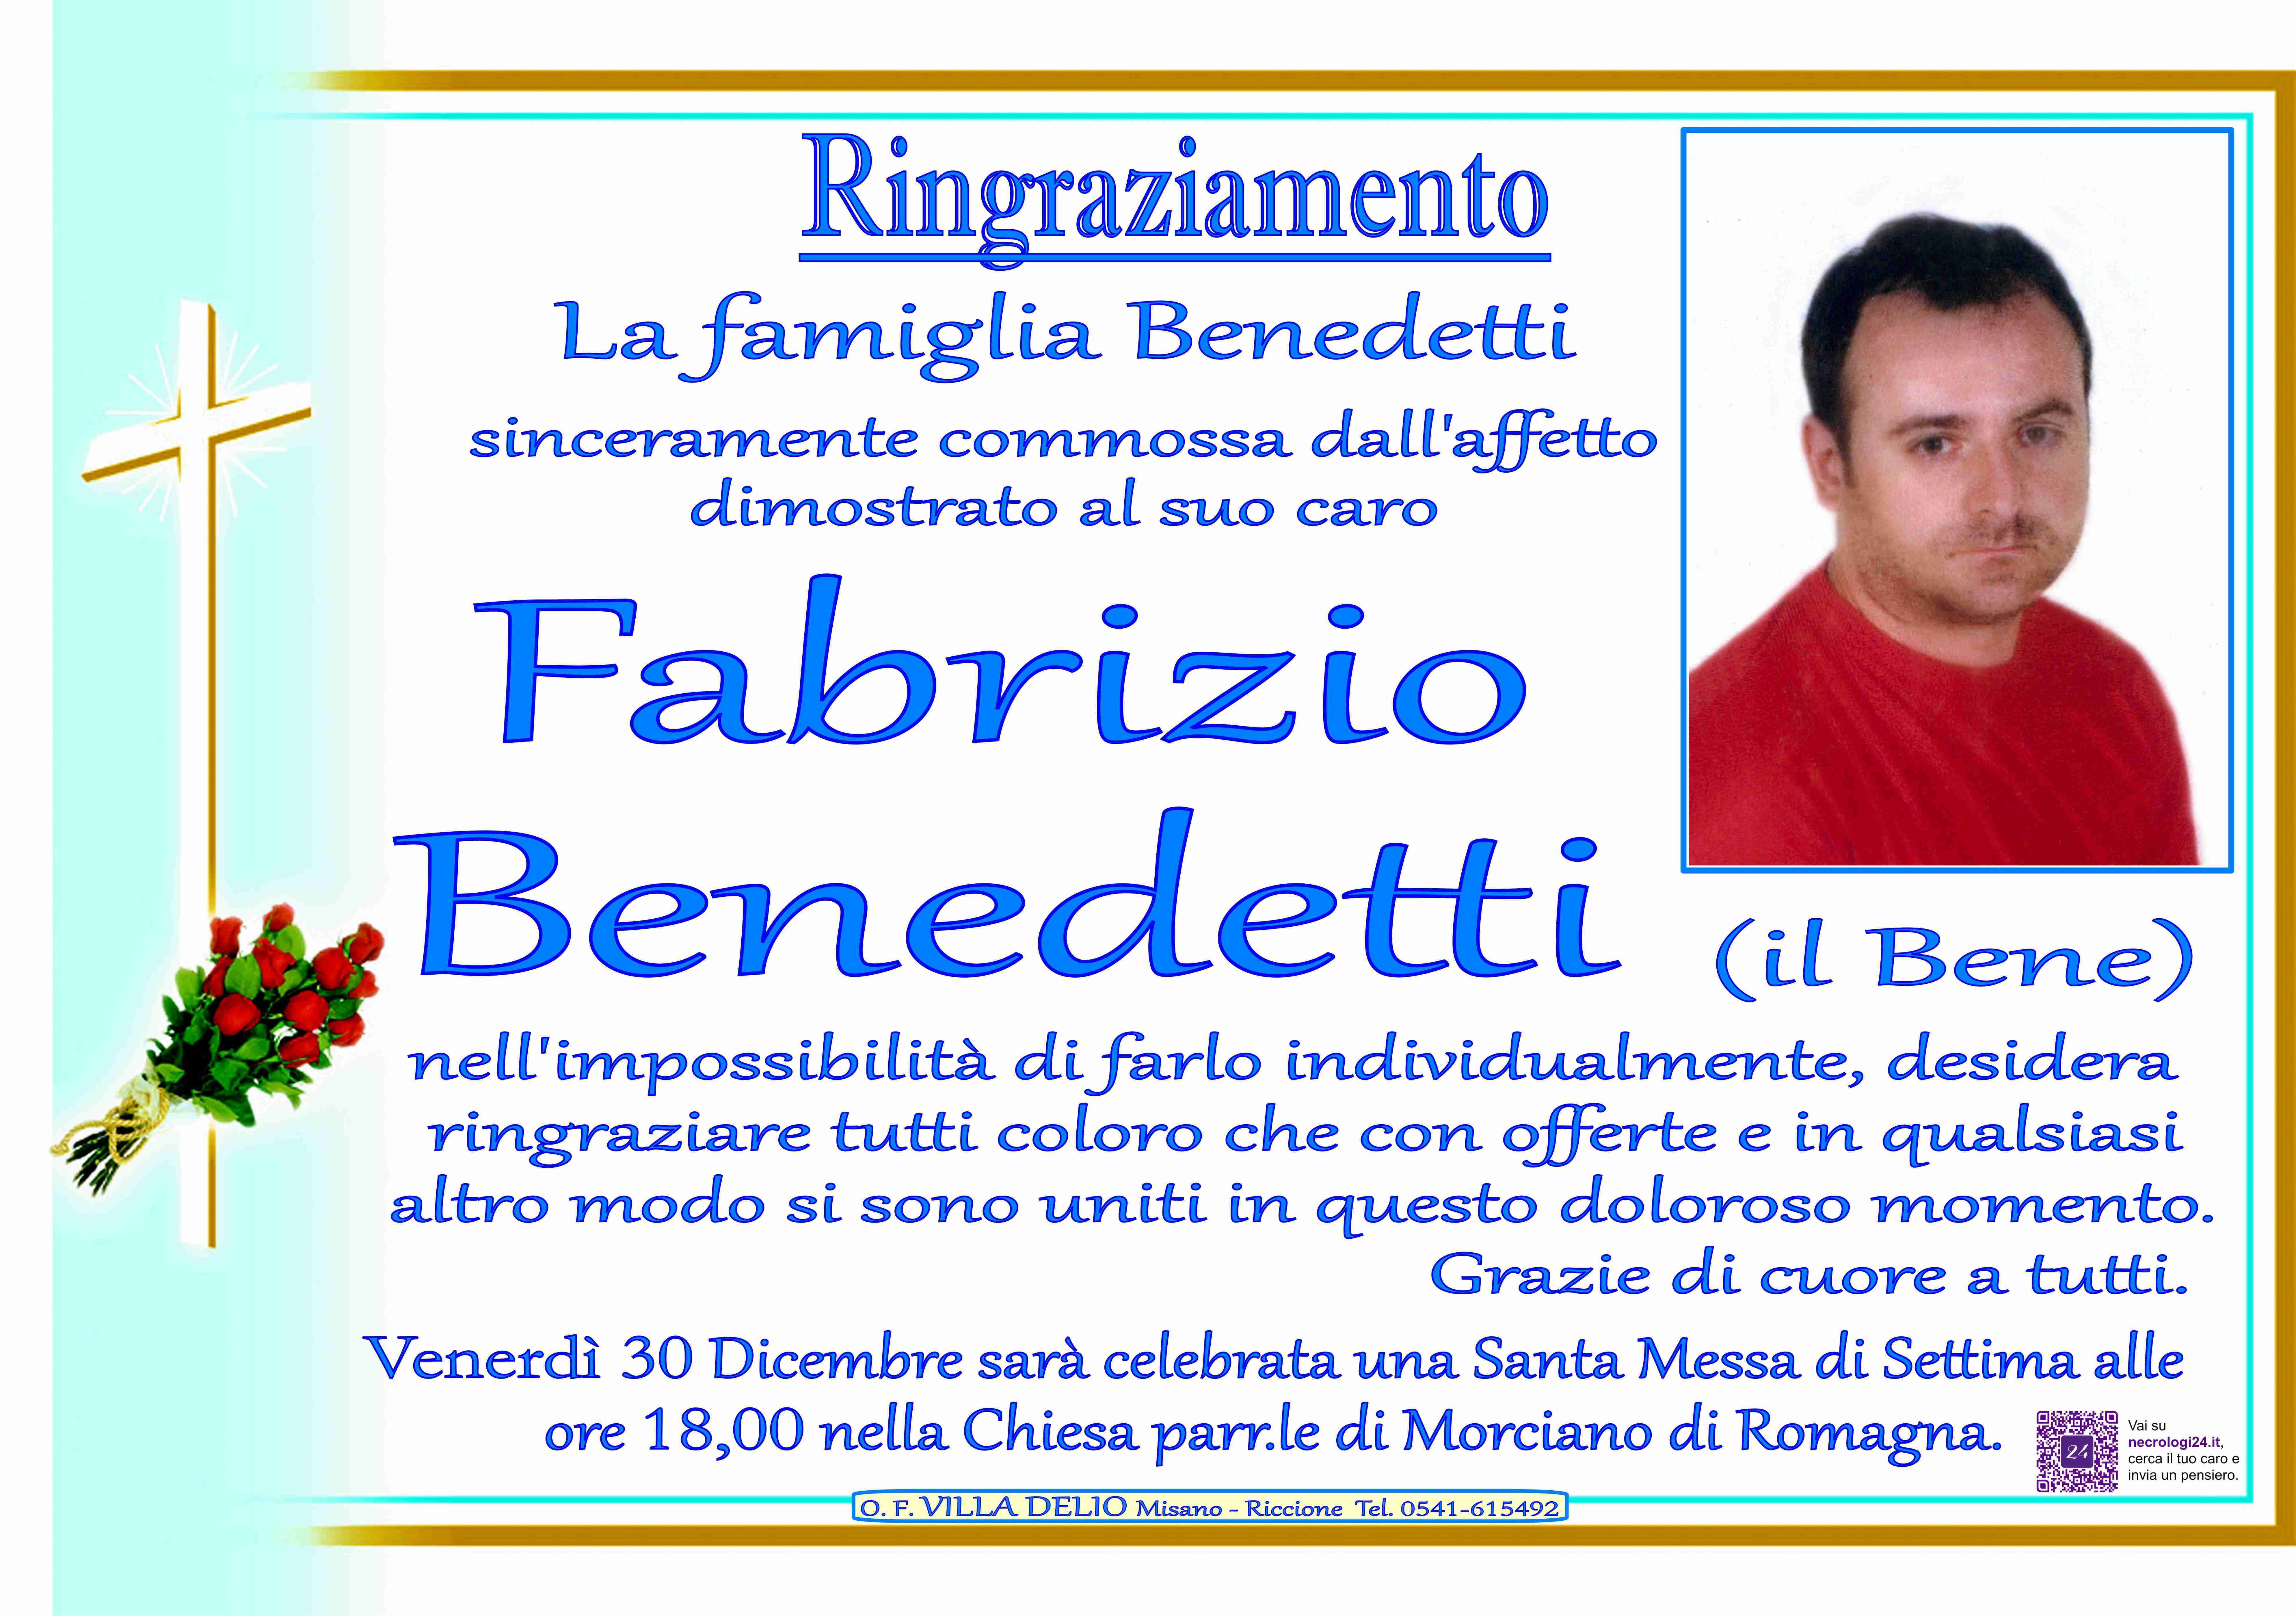 Fabrizio Benedetti